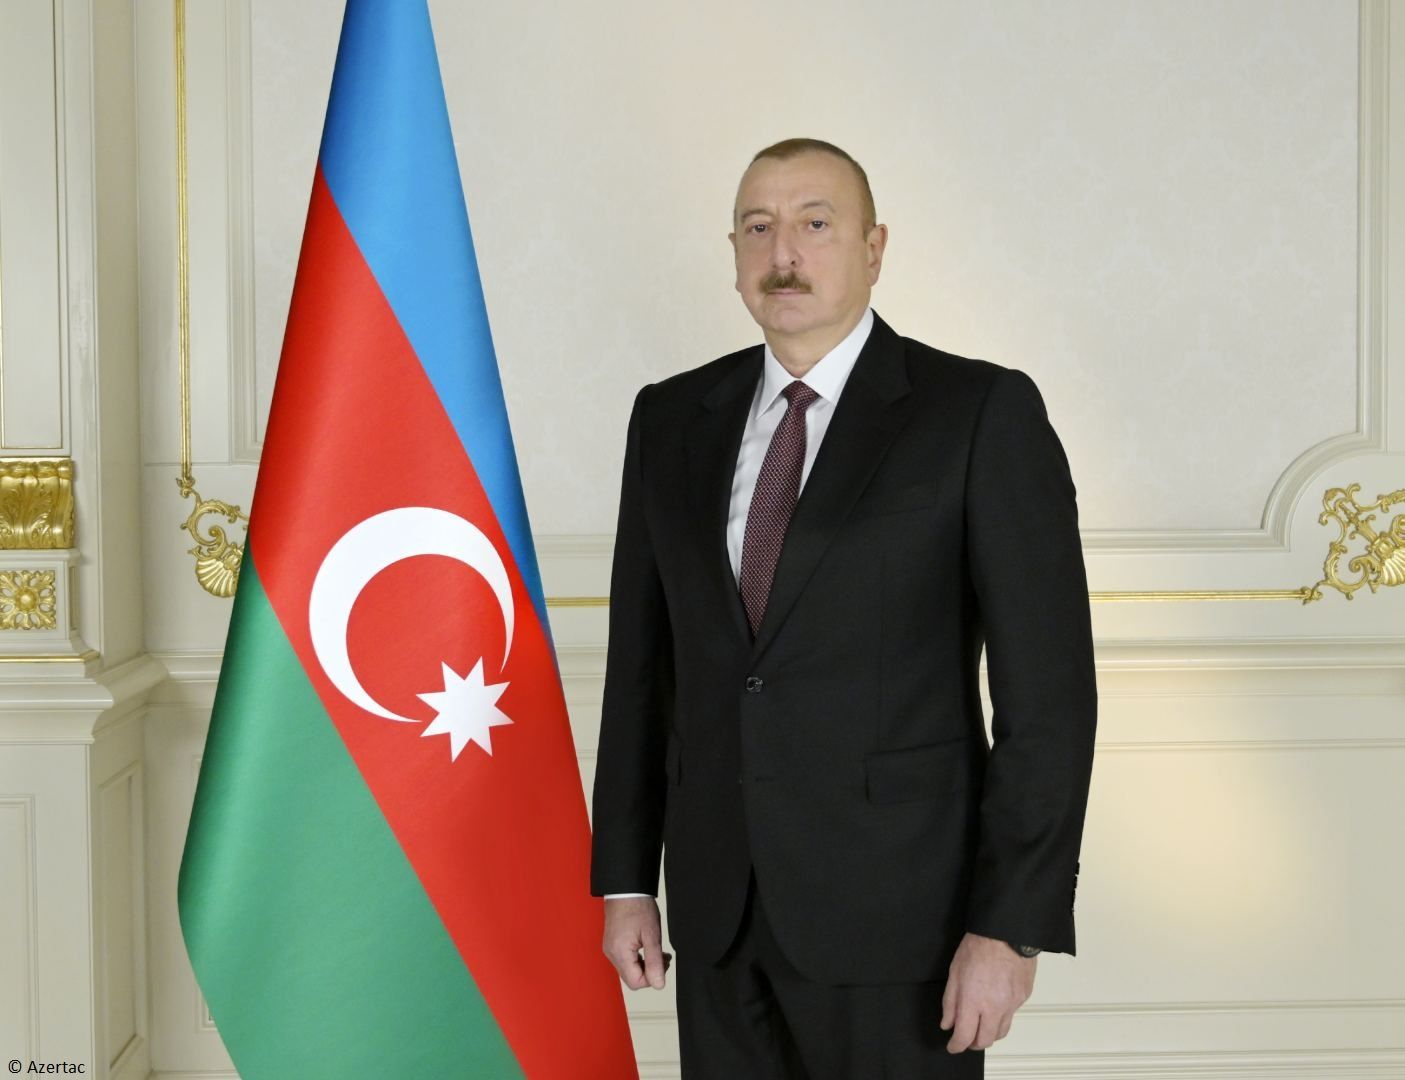 Le président Ilham Aliyev a partagé une publication sur Facebook à l'occasion de la Journée internationale des femmes